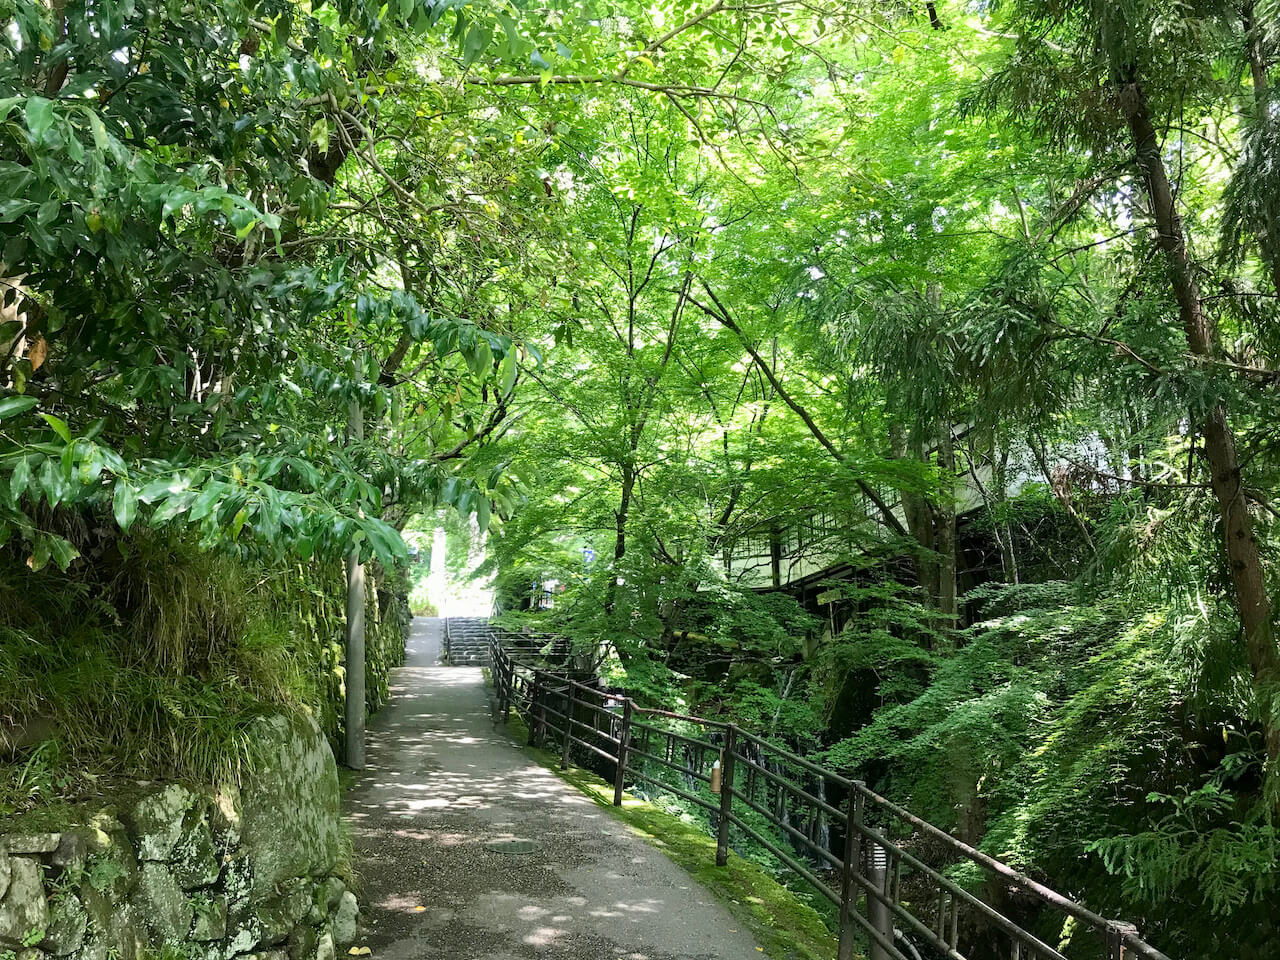 Scenery in Ohara, Kyoto